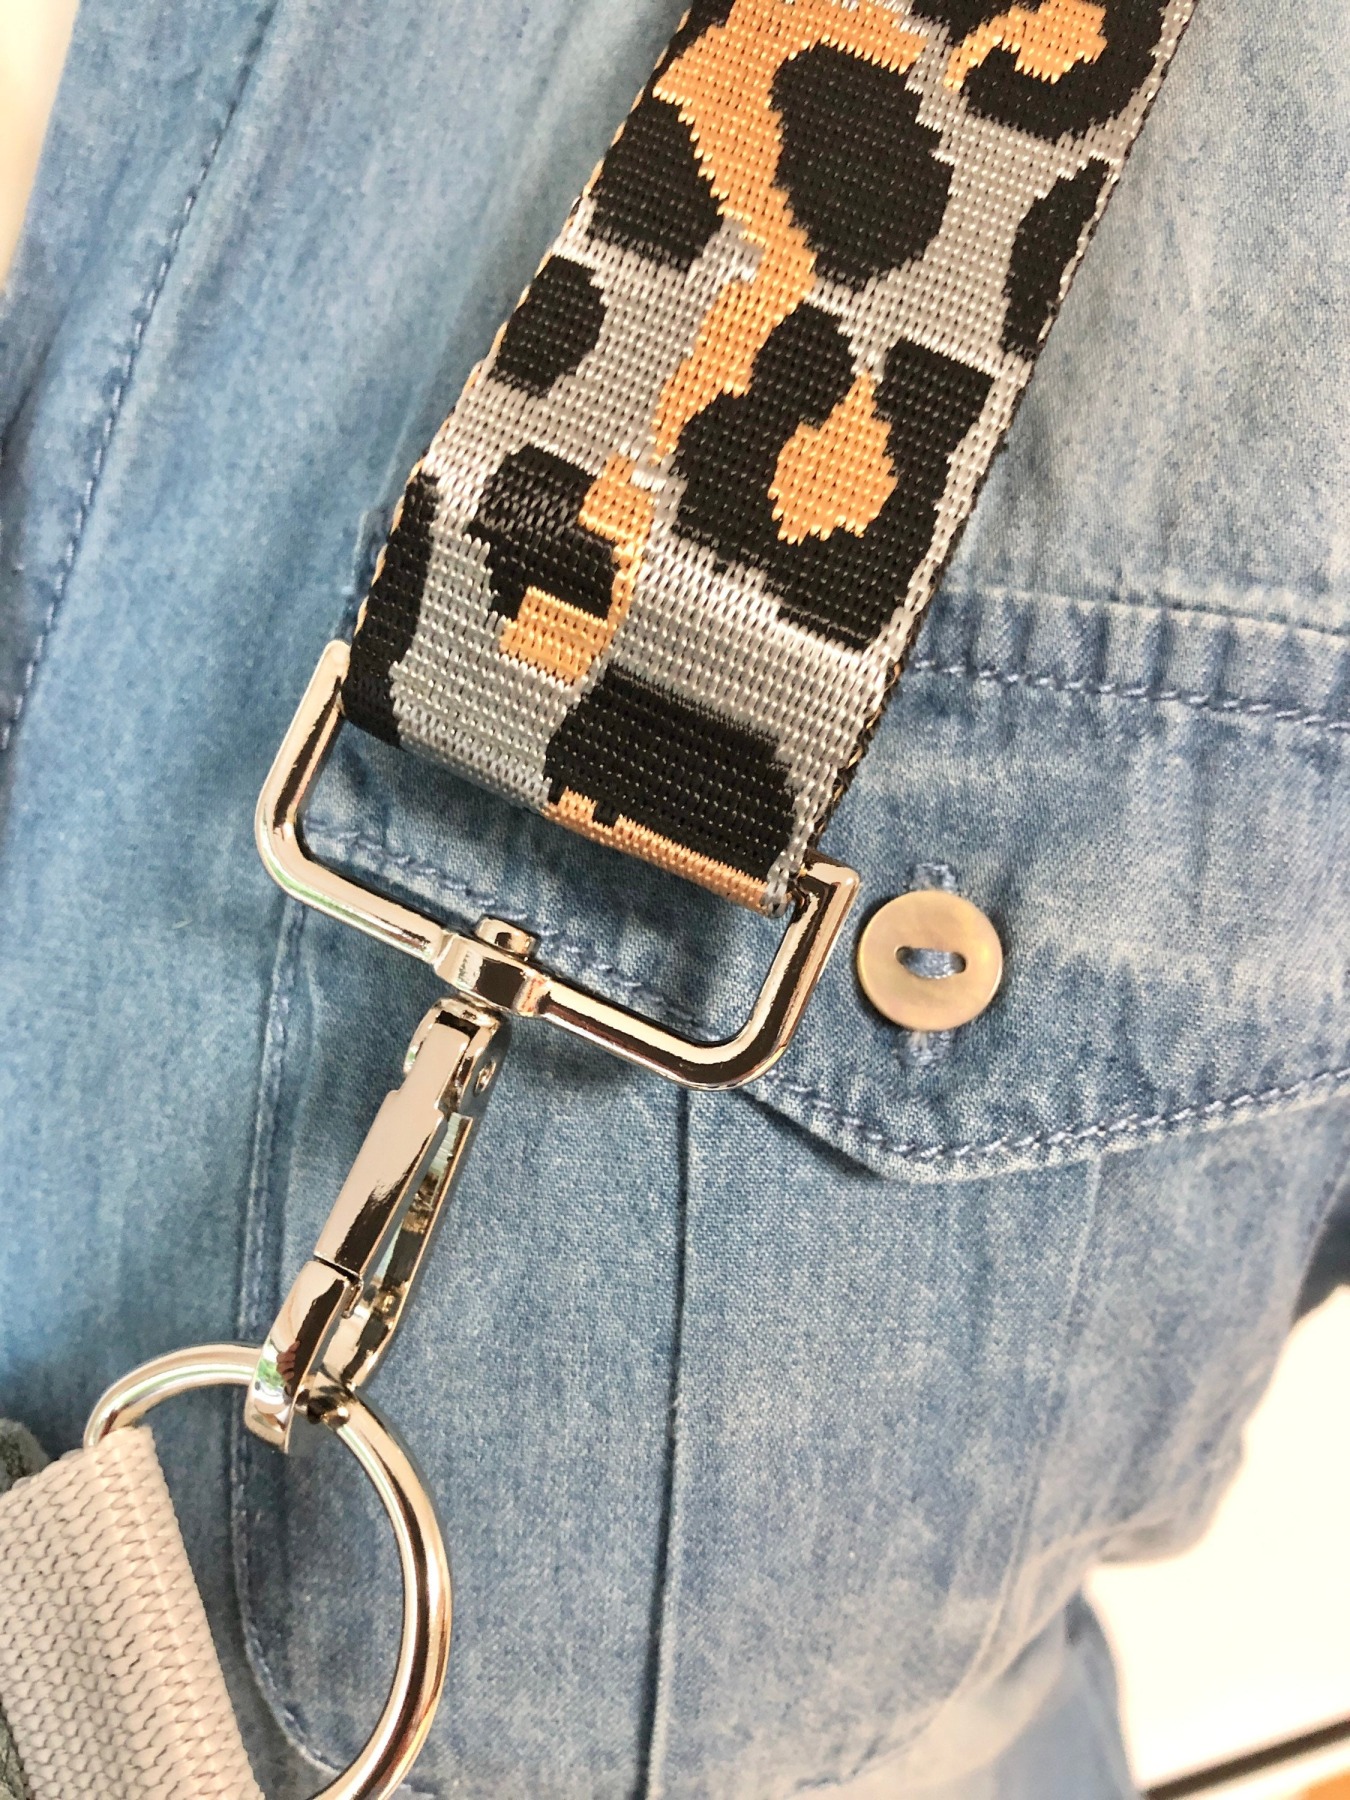 Bauchtasche XL, Crossbag Cord mint, dunkelgrauer Reißverschluss, mit Leogurt grau, Tasche Cord